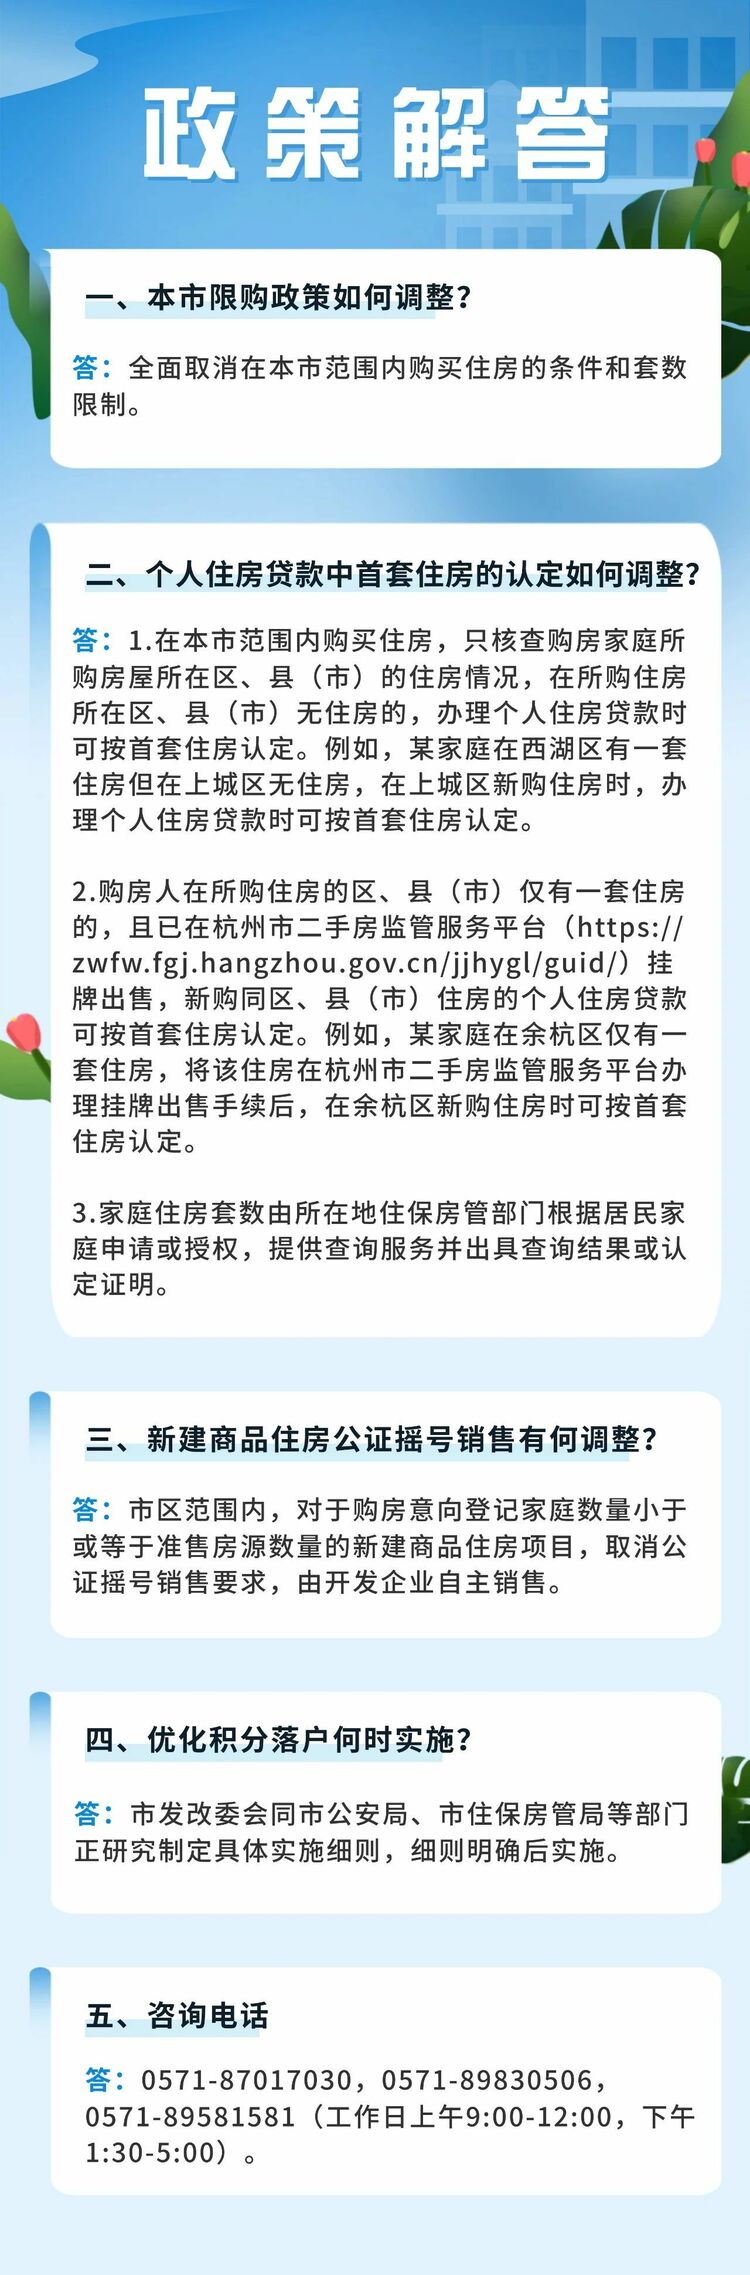 杭州：一切撤消住房限购 购房可申请落户